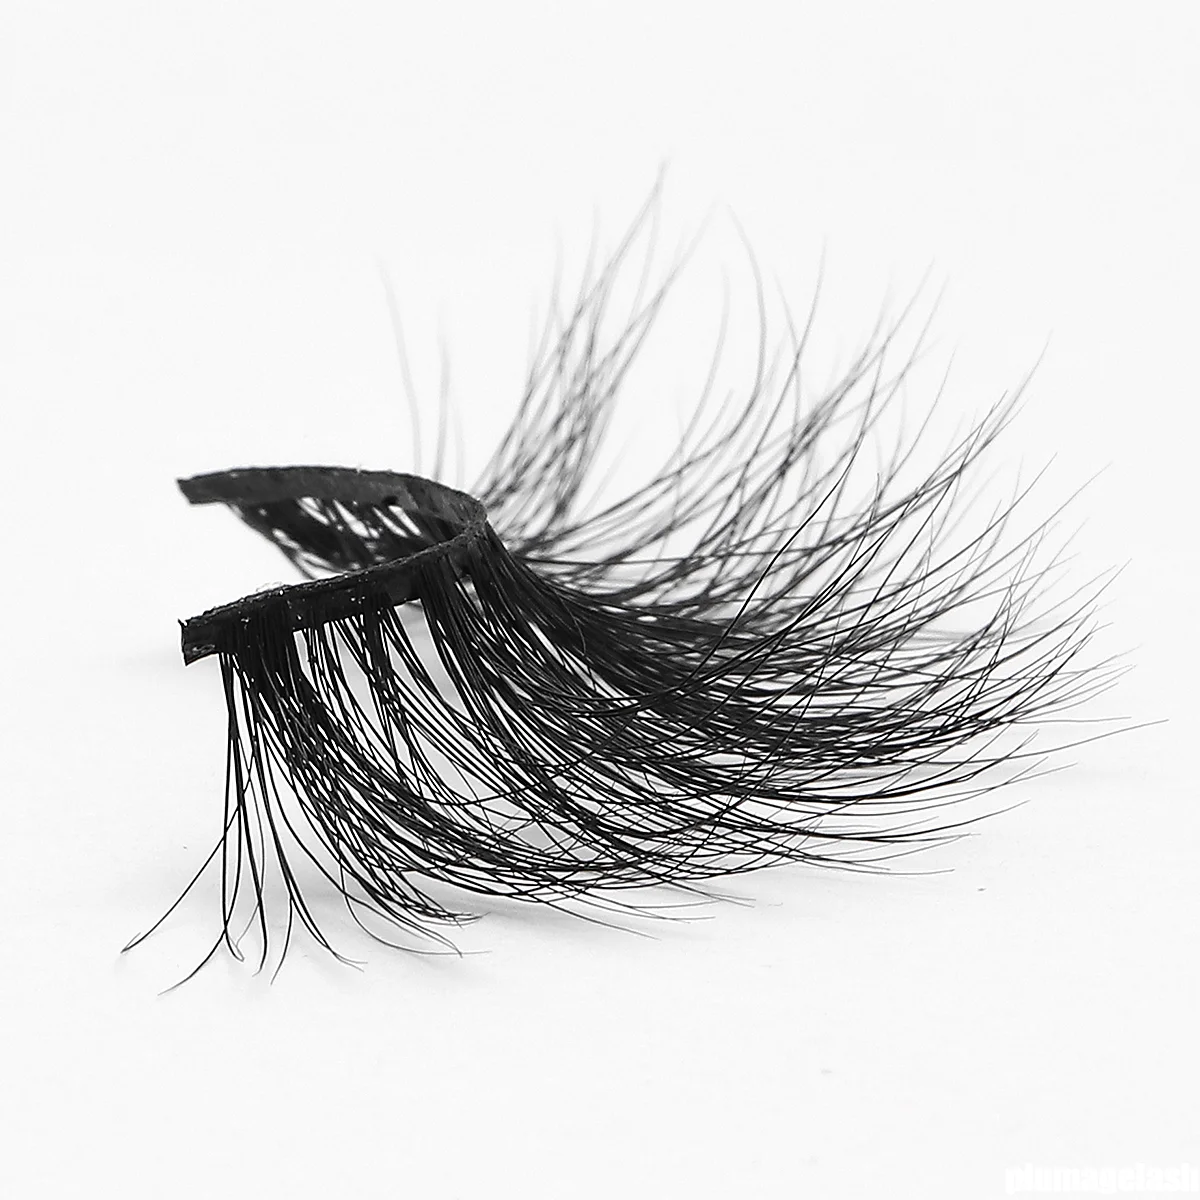 25mm lashes mink eyelashes vendor